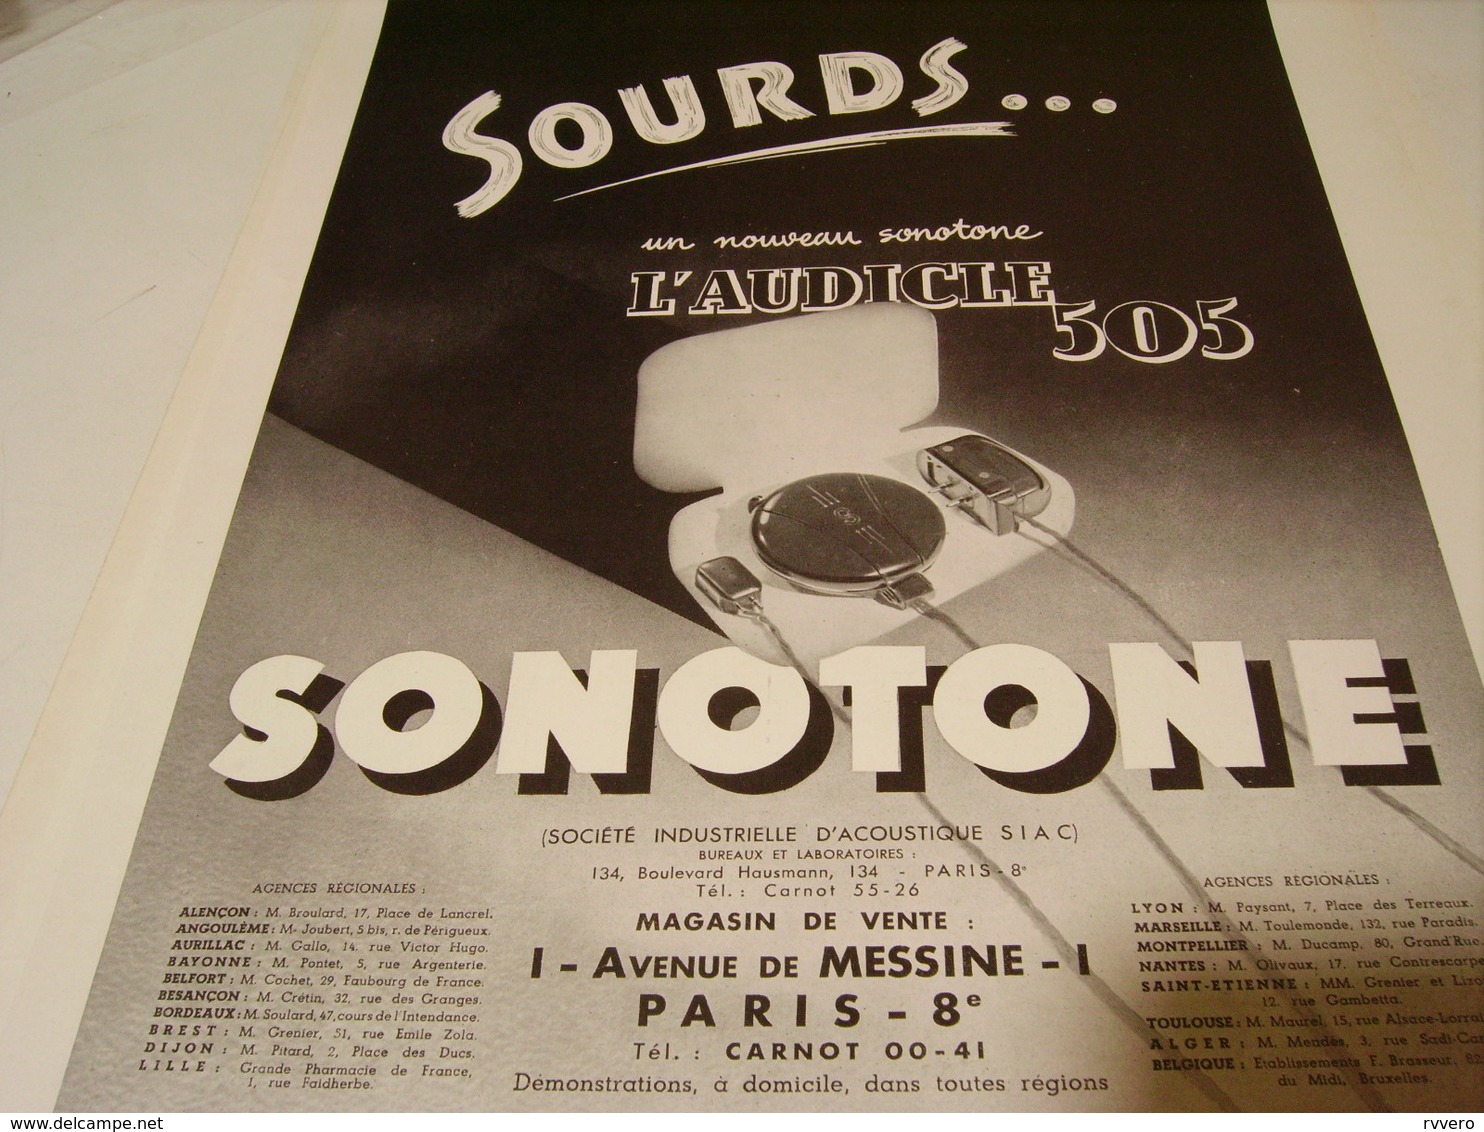 ANCIENNE PUBLICITE SOURDS DE SONOTONE 1939 - Publicités